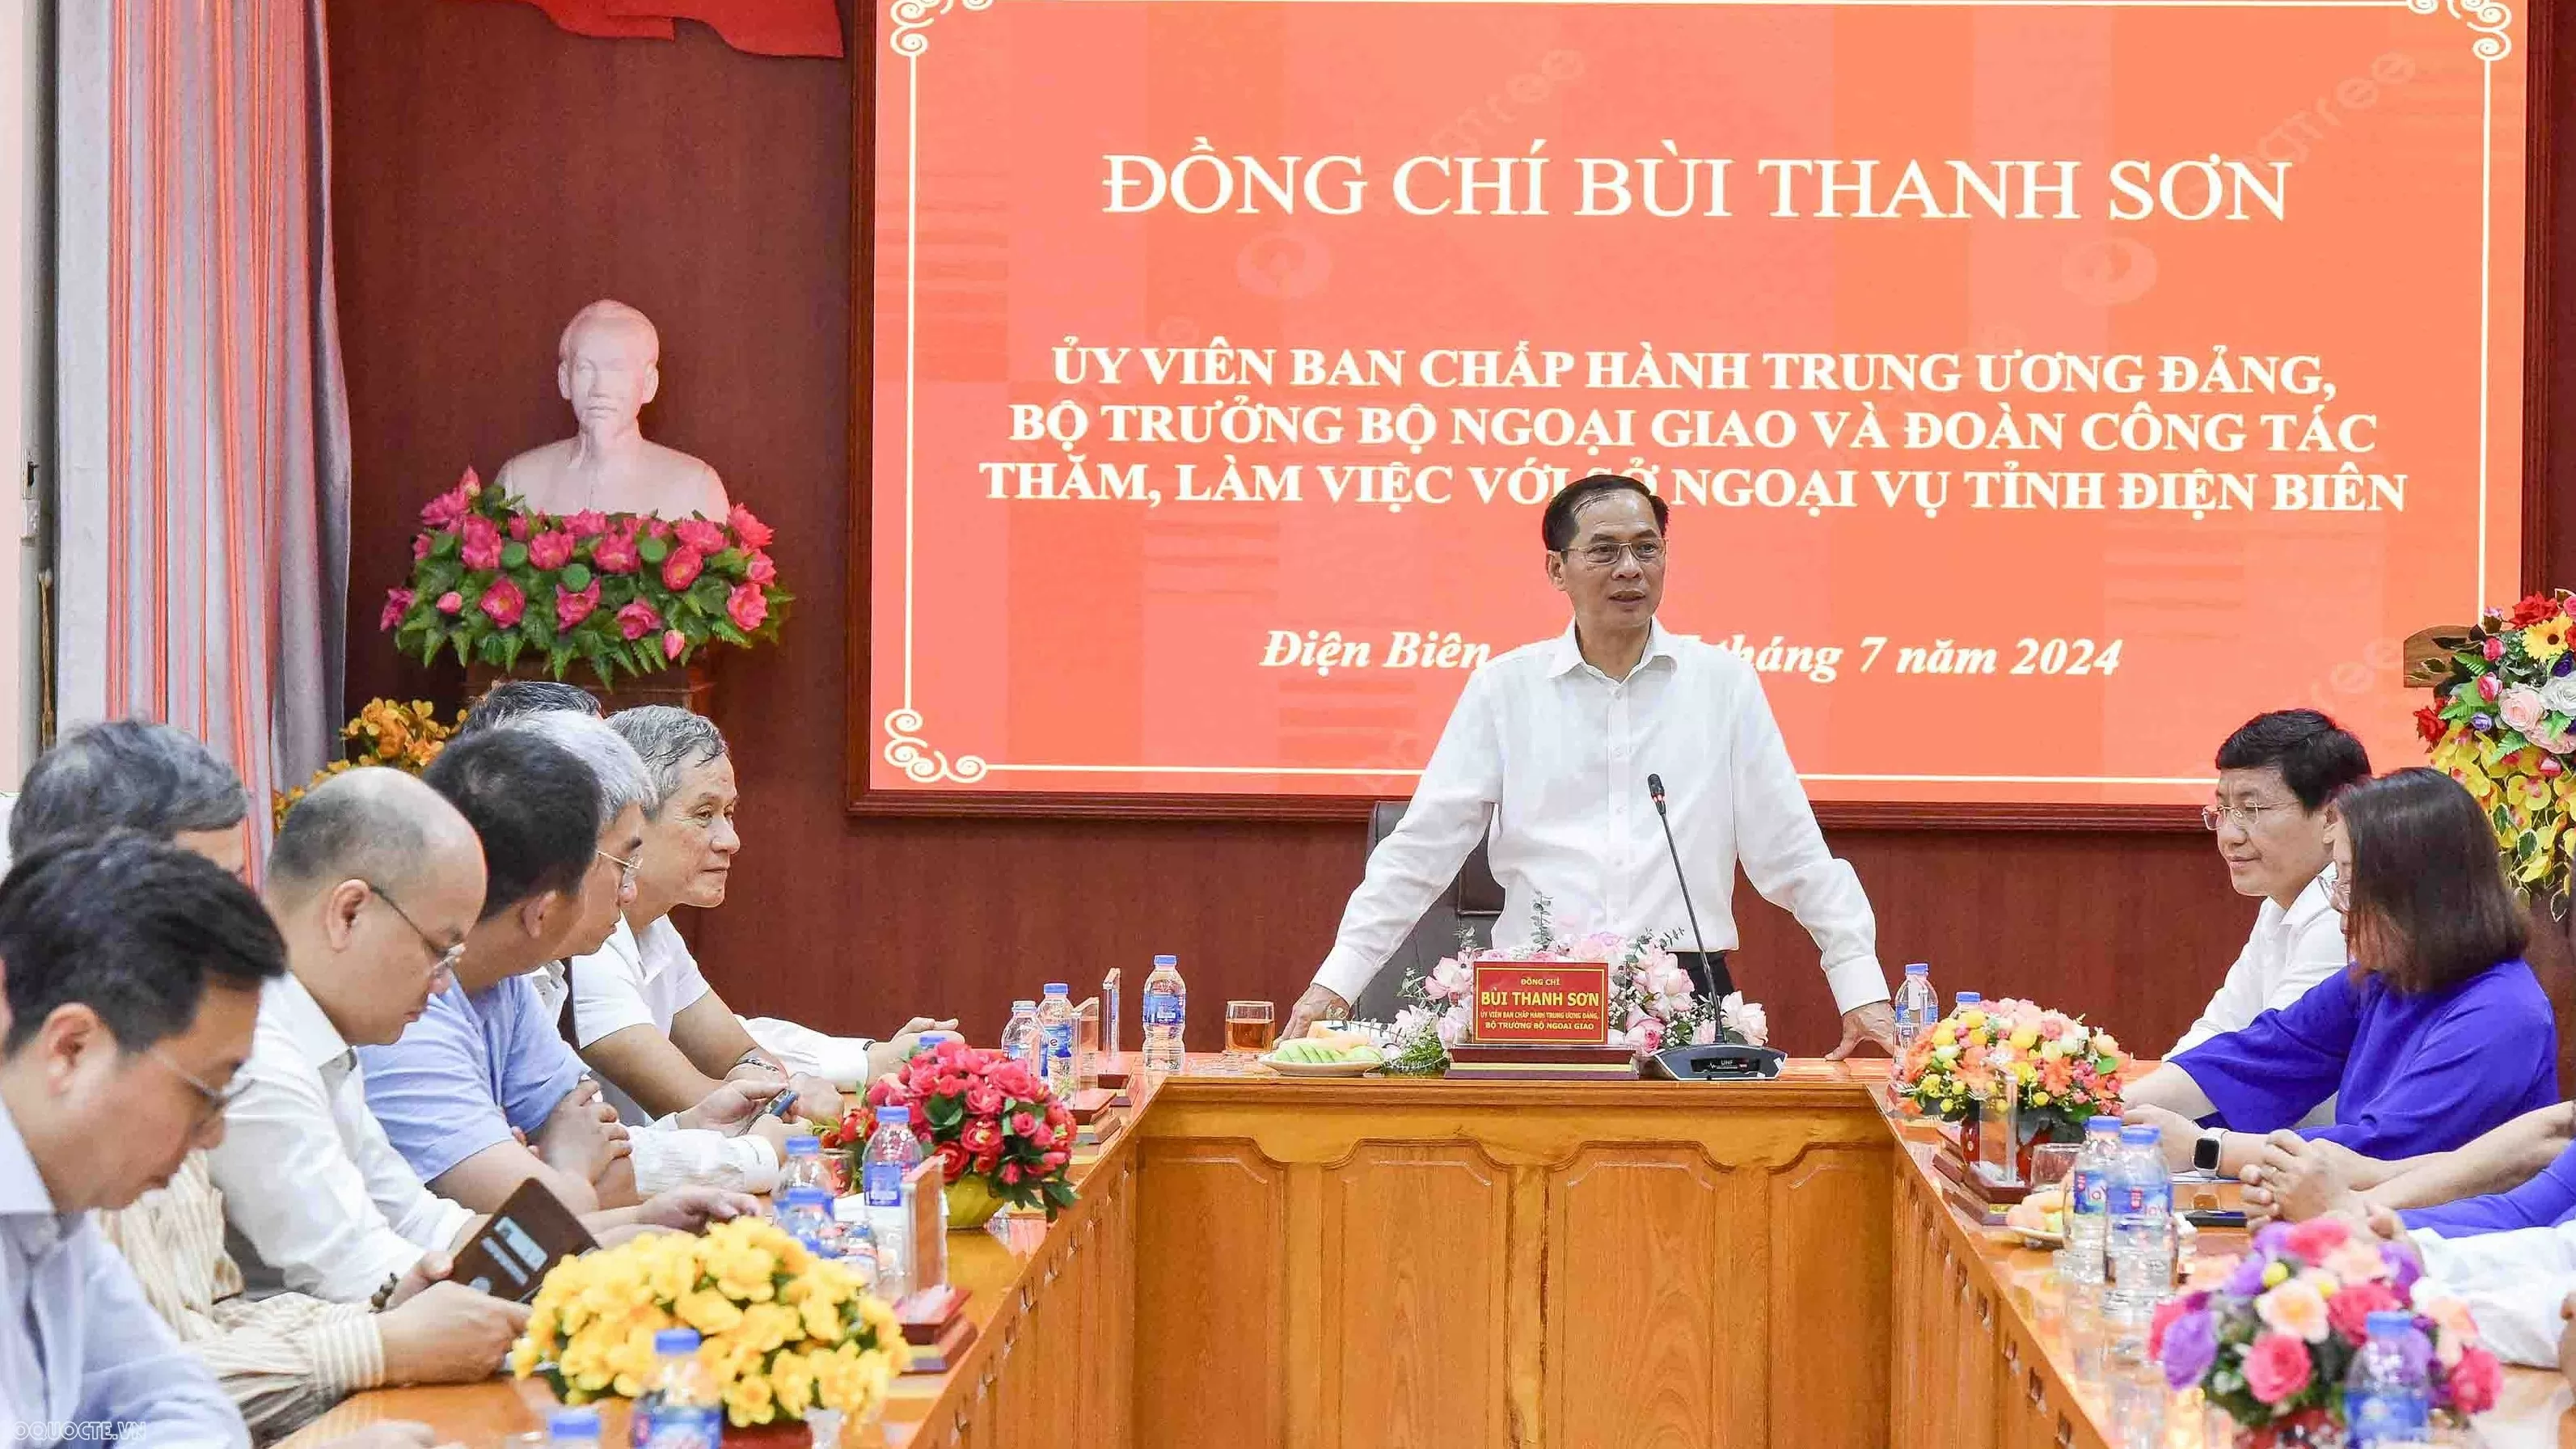 Bộ trưởng Ngoại giao Bùi Thanh Sơn làm việc với Sở Ngoại vụ tỉnh Điện Biên